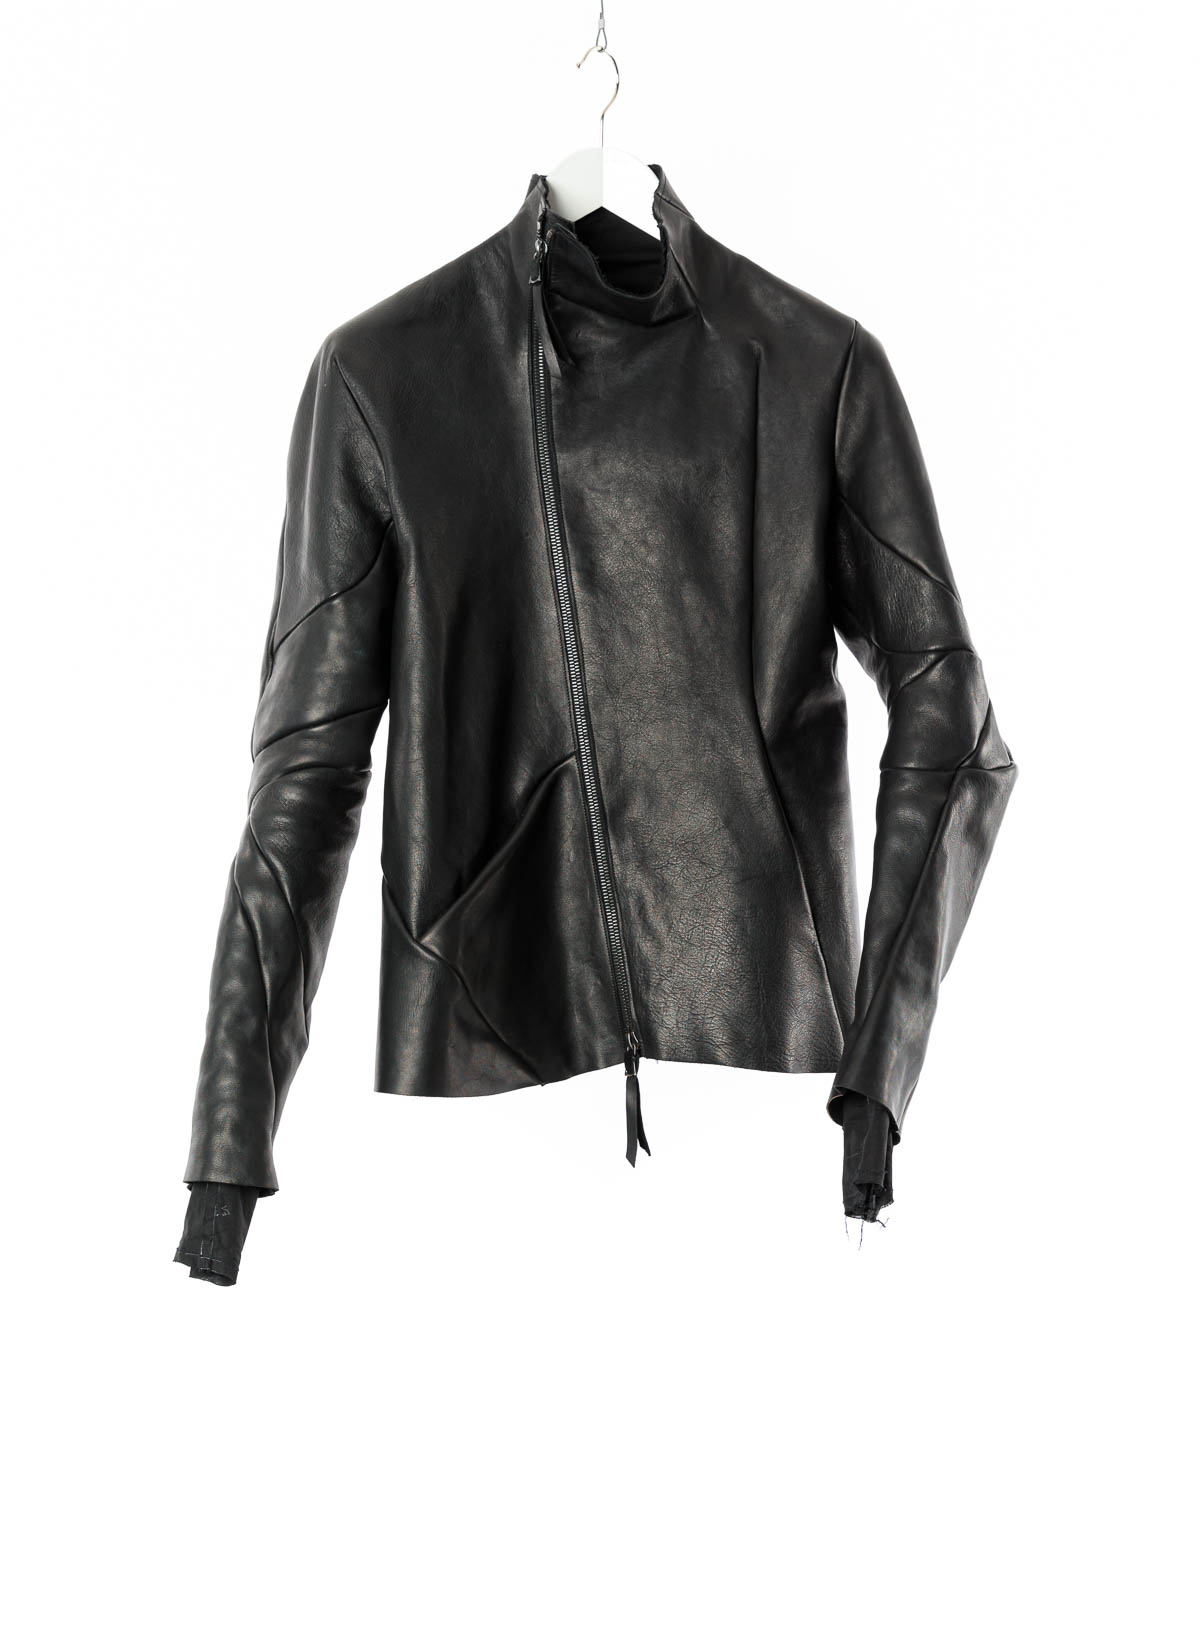 hide-m | LEON EMANUEL BLANCK Distortion Leather Jacket black horse